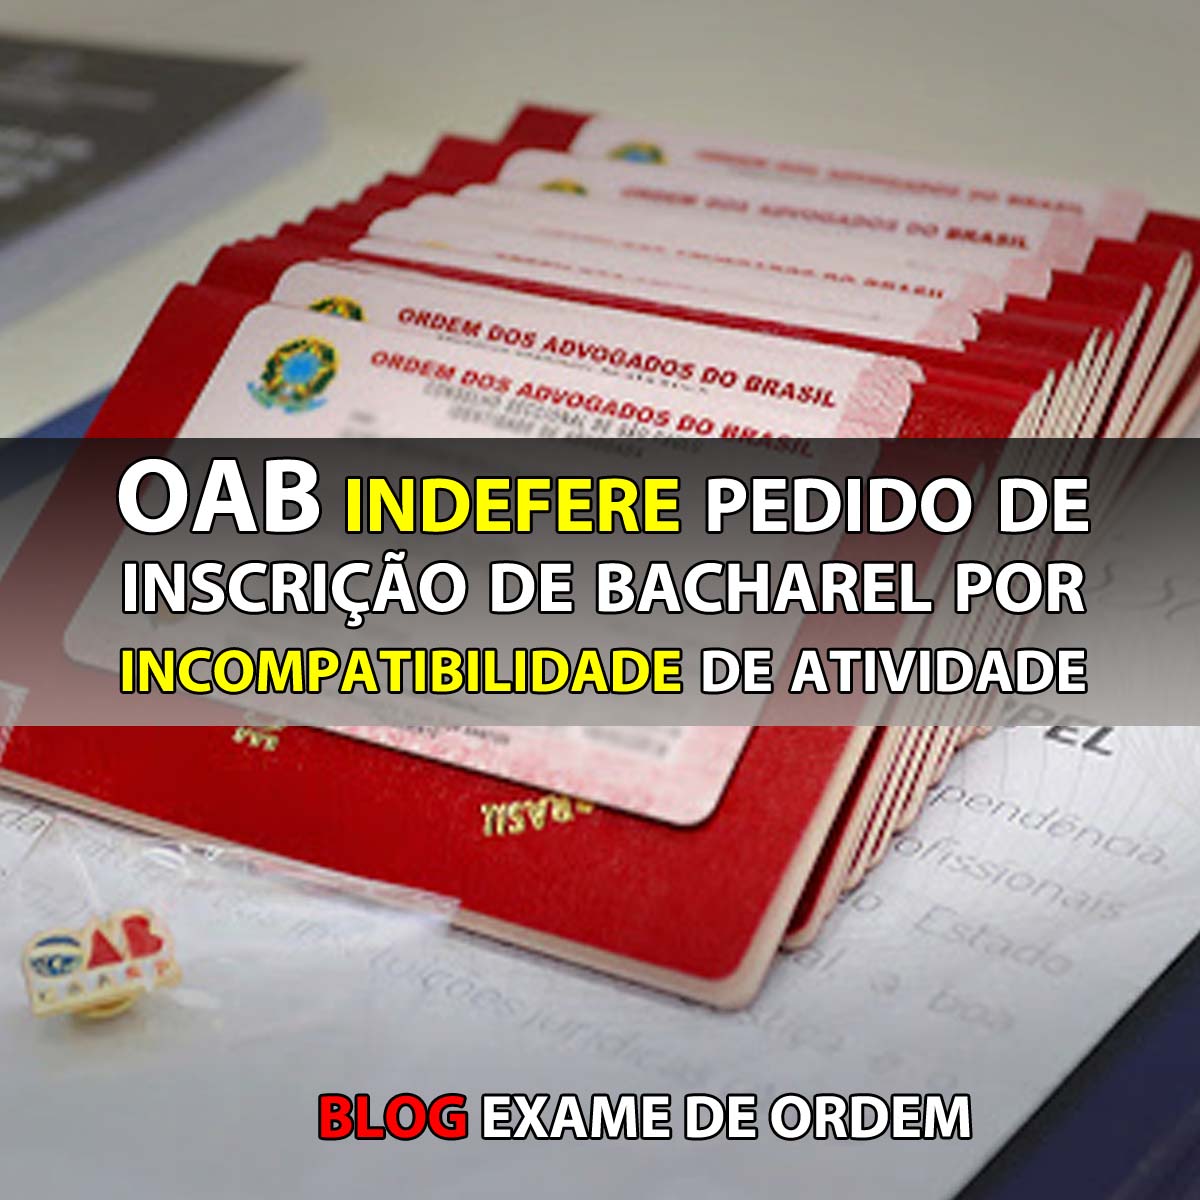 OAB indefere pedido de inscrio de bacharel por incompatibilidade de atividade